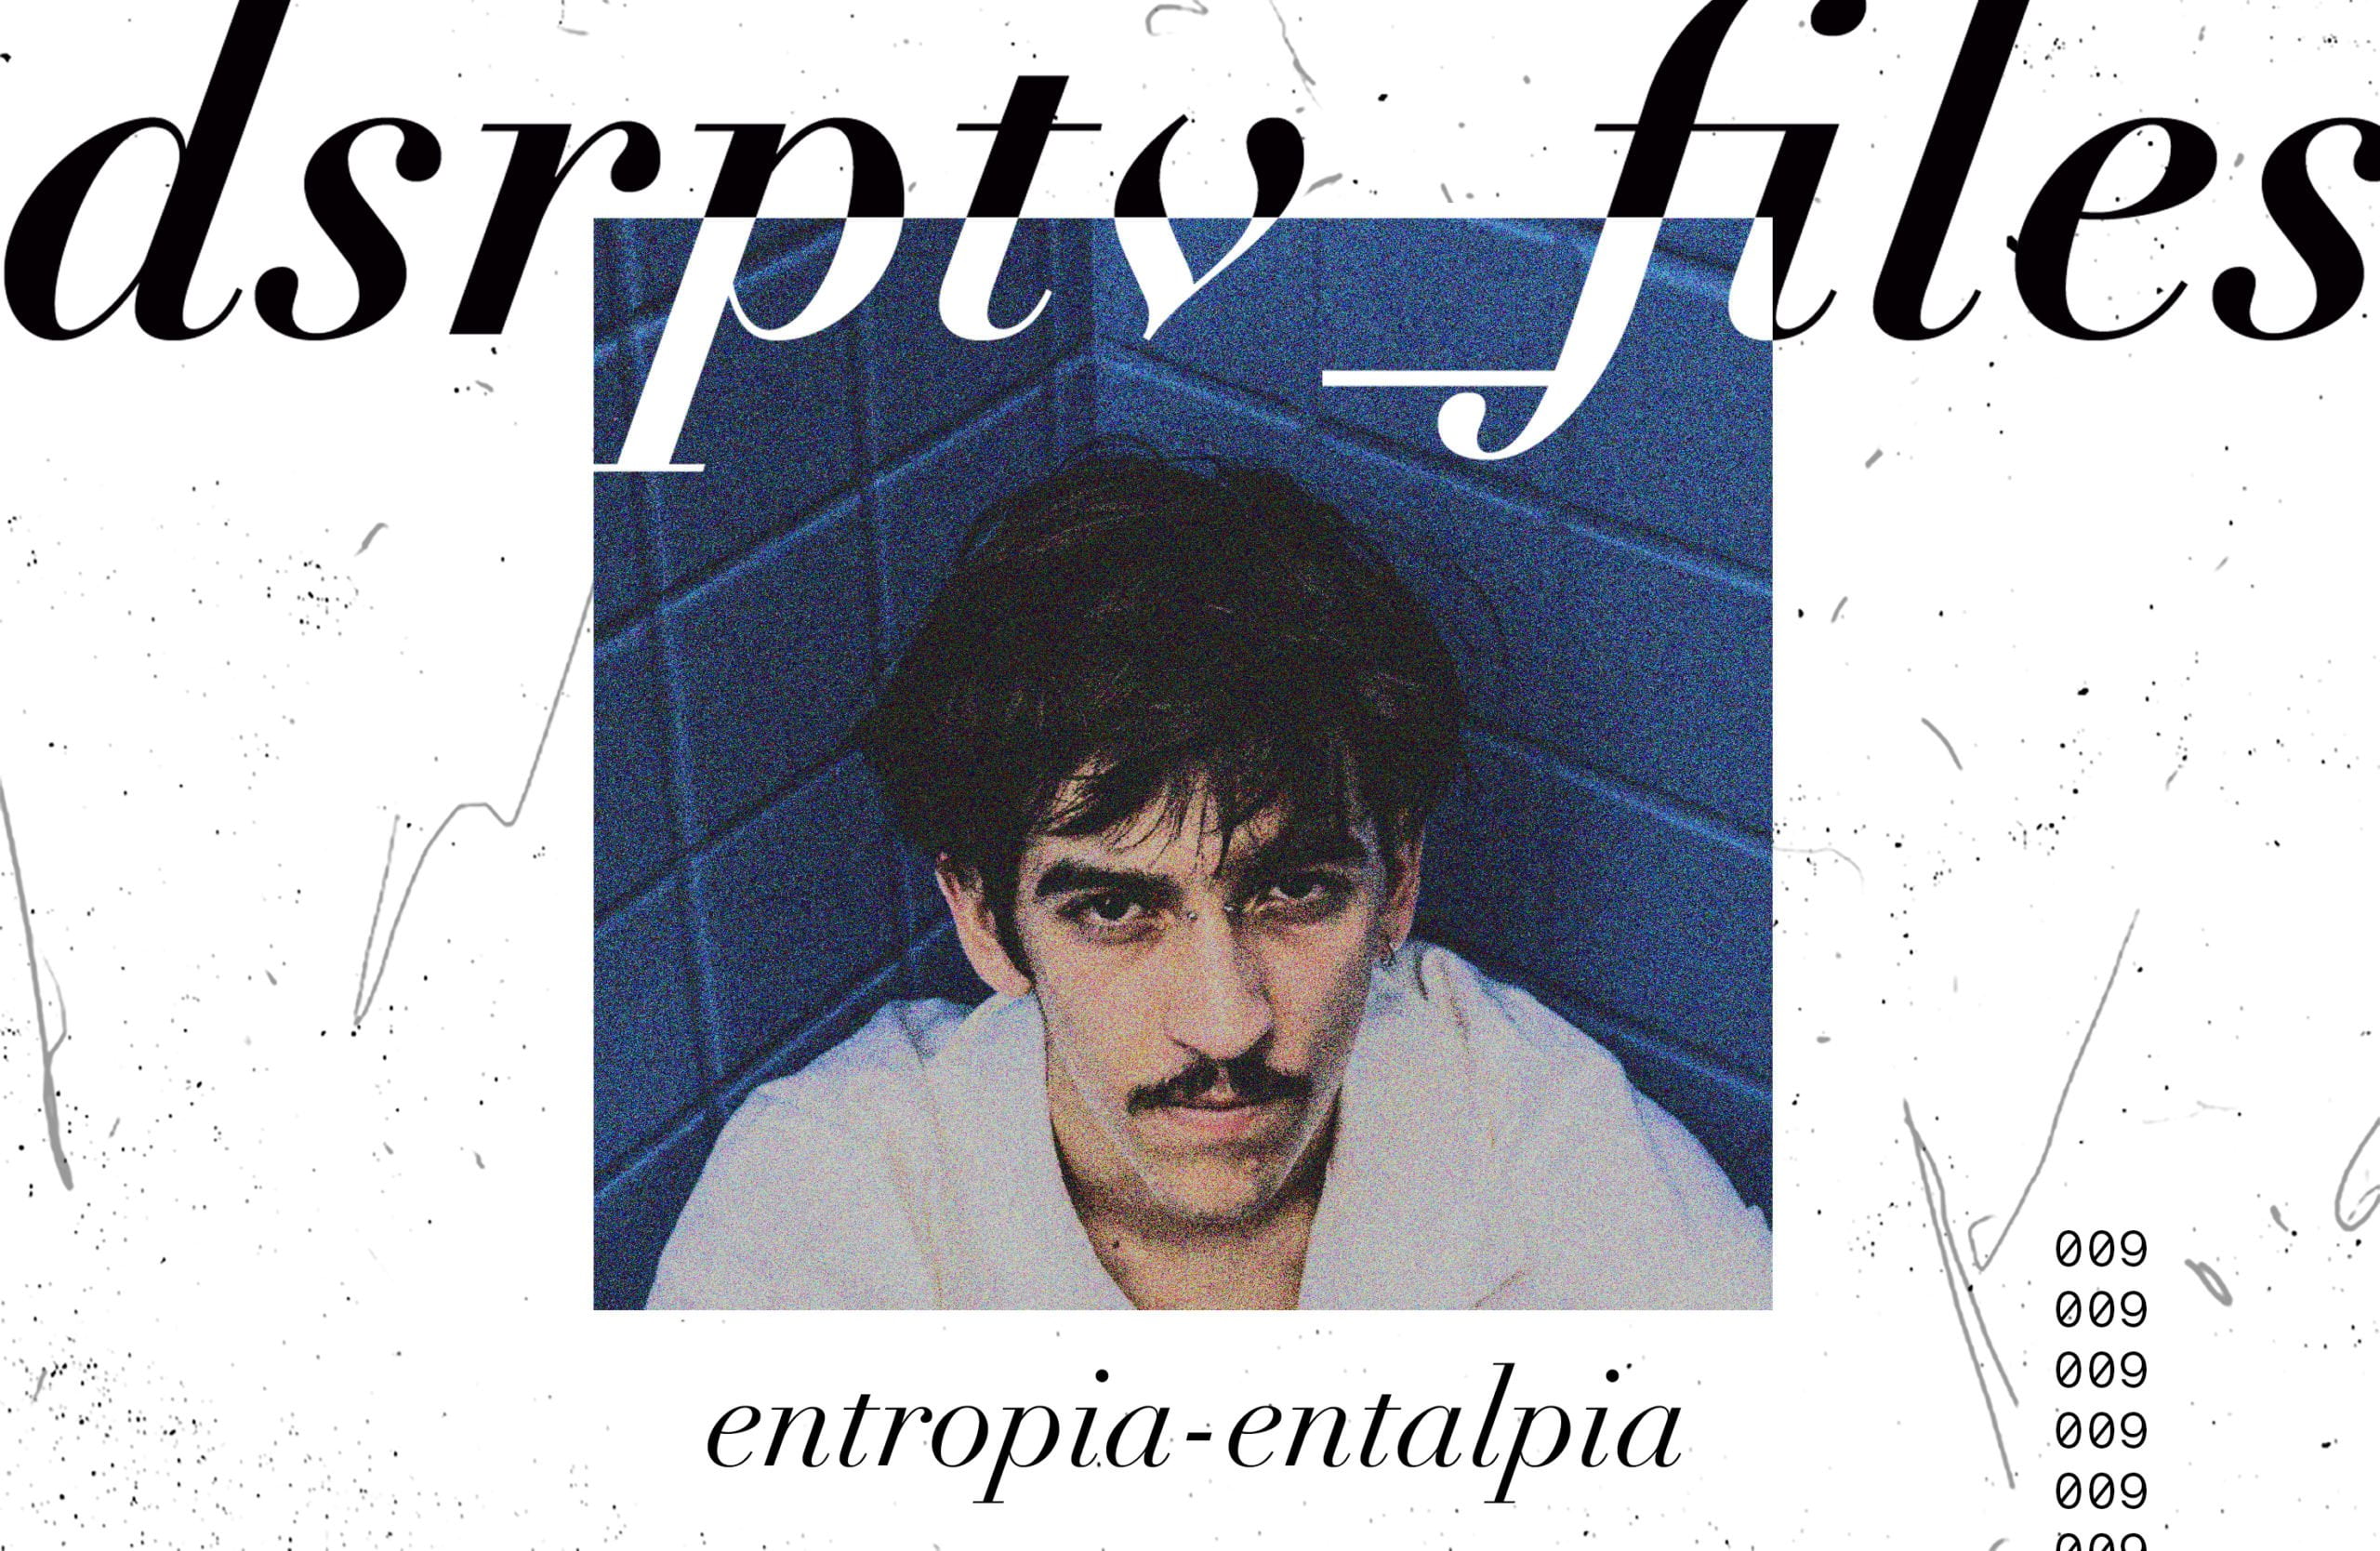 dsrptv_files – Entropia-Entalpia